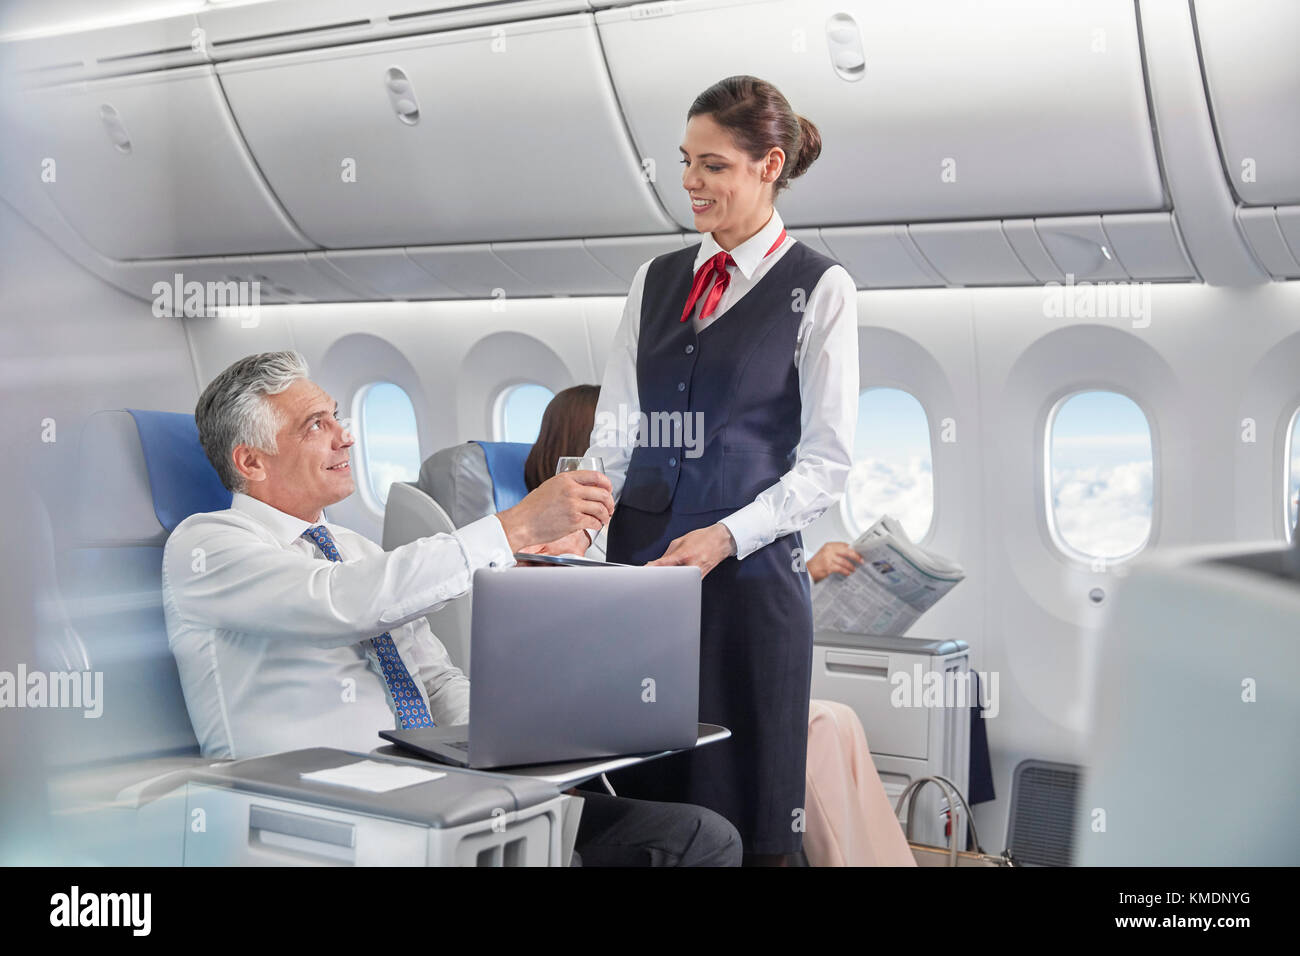 Ein Flugbegleiter serviert dem Geschäftsmann, der am Laptop arbeitet, Getränke Flugzeug Stockfoto